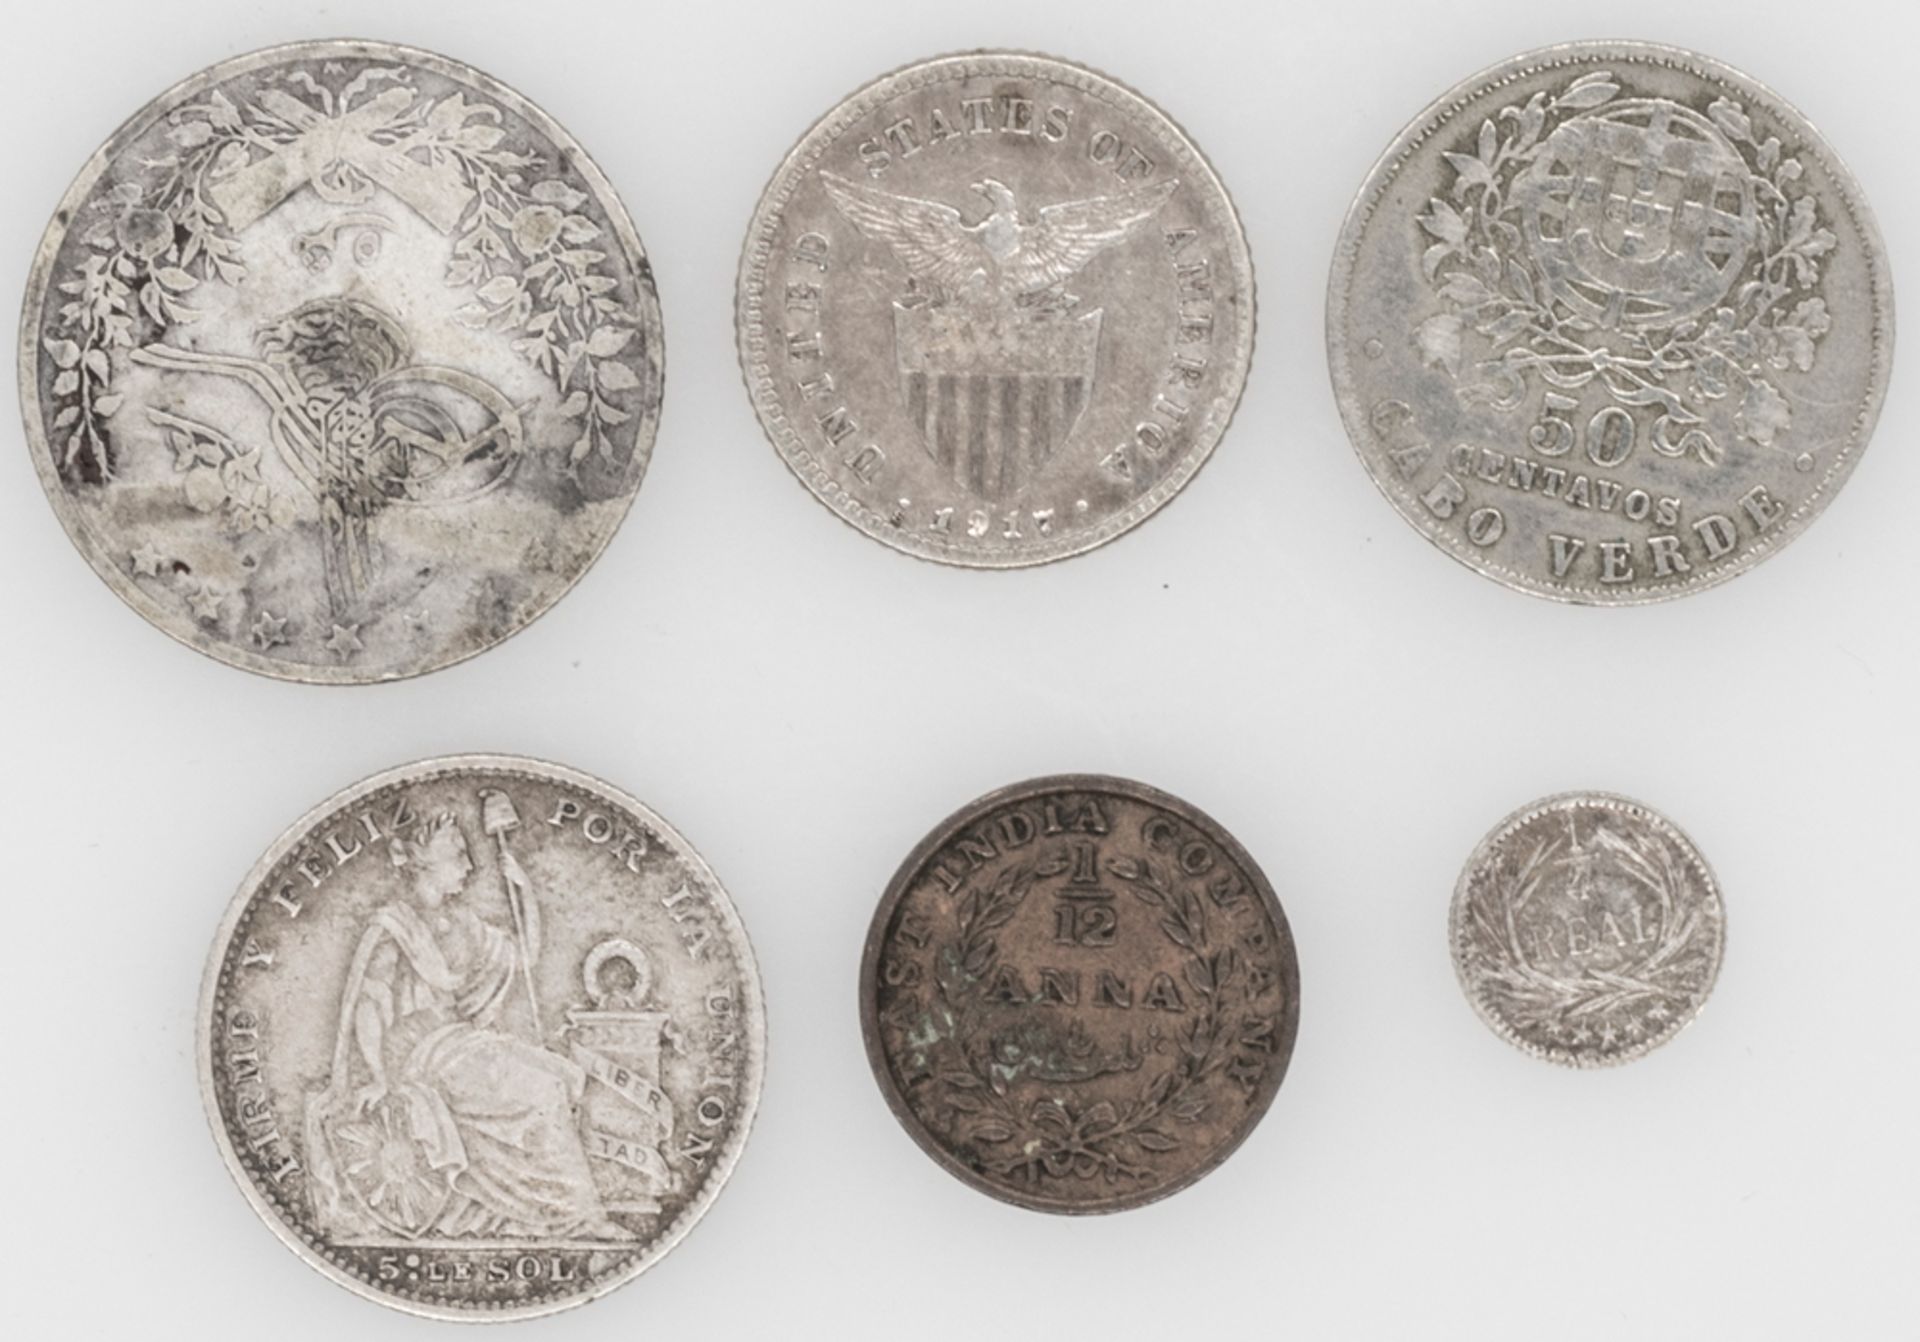 Lot Münzen aus aller Welt, dabei auch Silbermünzen. Bestehend aus: Peru 1900 5 Sol, Portugal - Cap